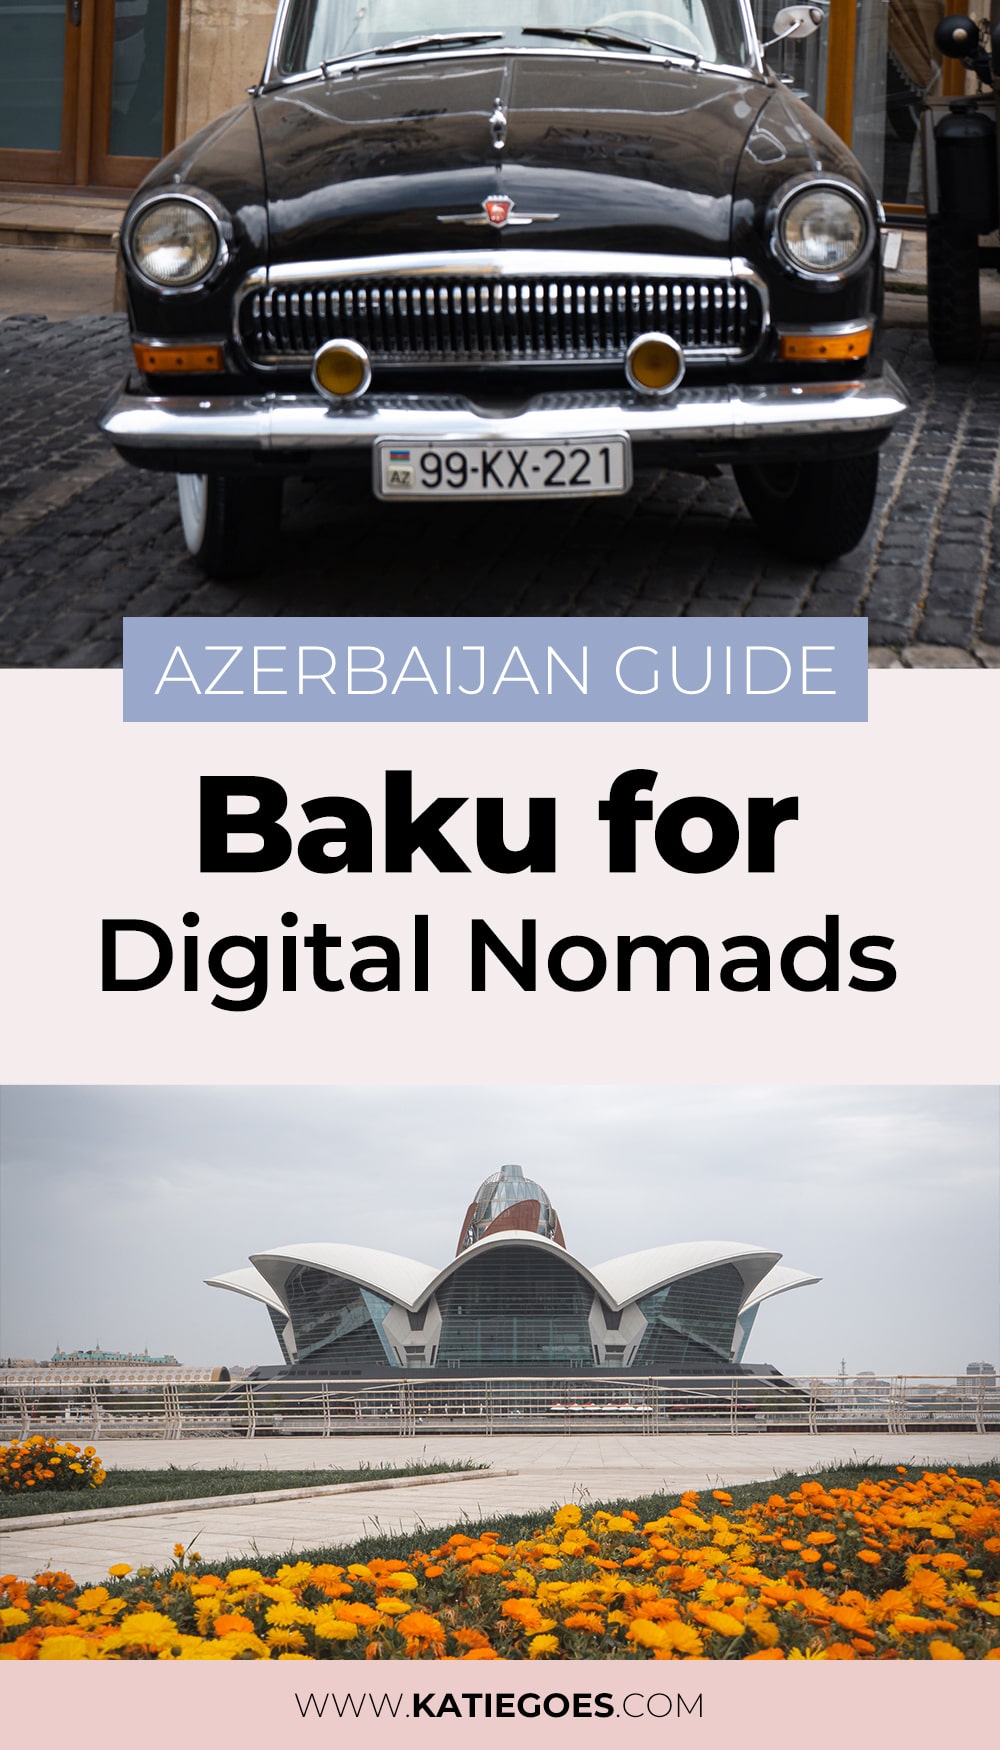 Azerbaijan Guide: Baku for Digital Nomads